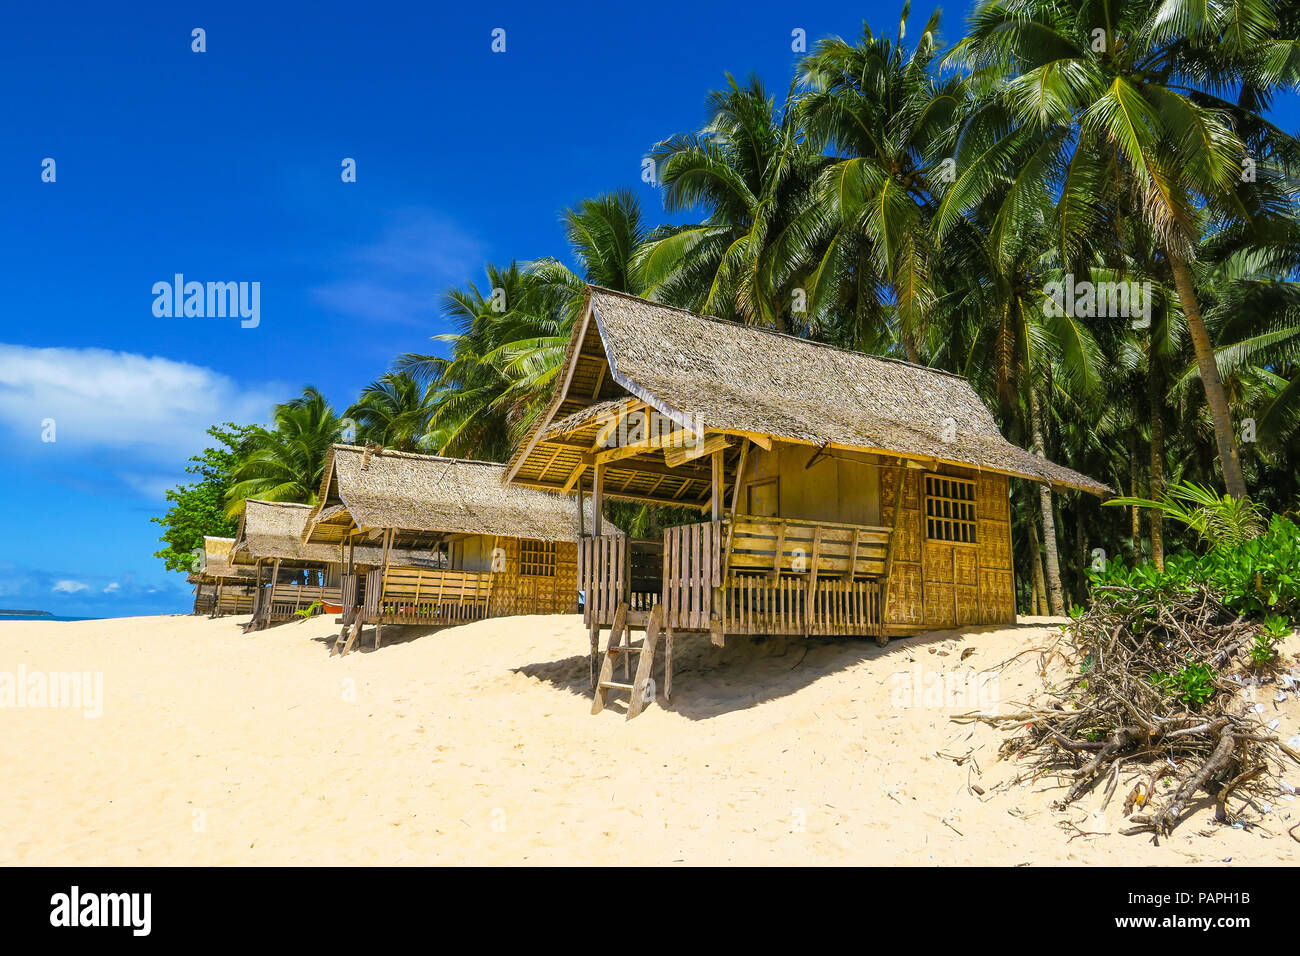 Cabañas de Playa Bambú en el paraíso tropical con palmeras y arena blanca - Daku, Siargao Island - Filipinas Foto de stock